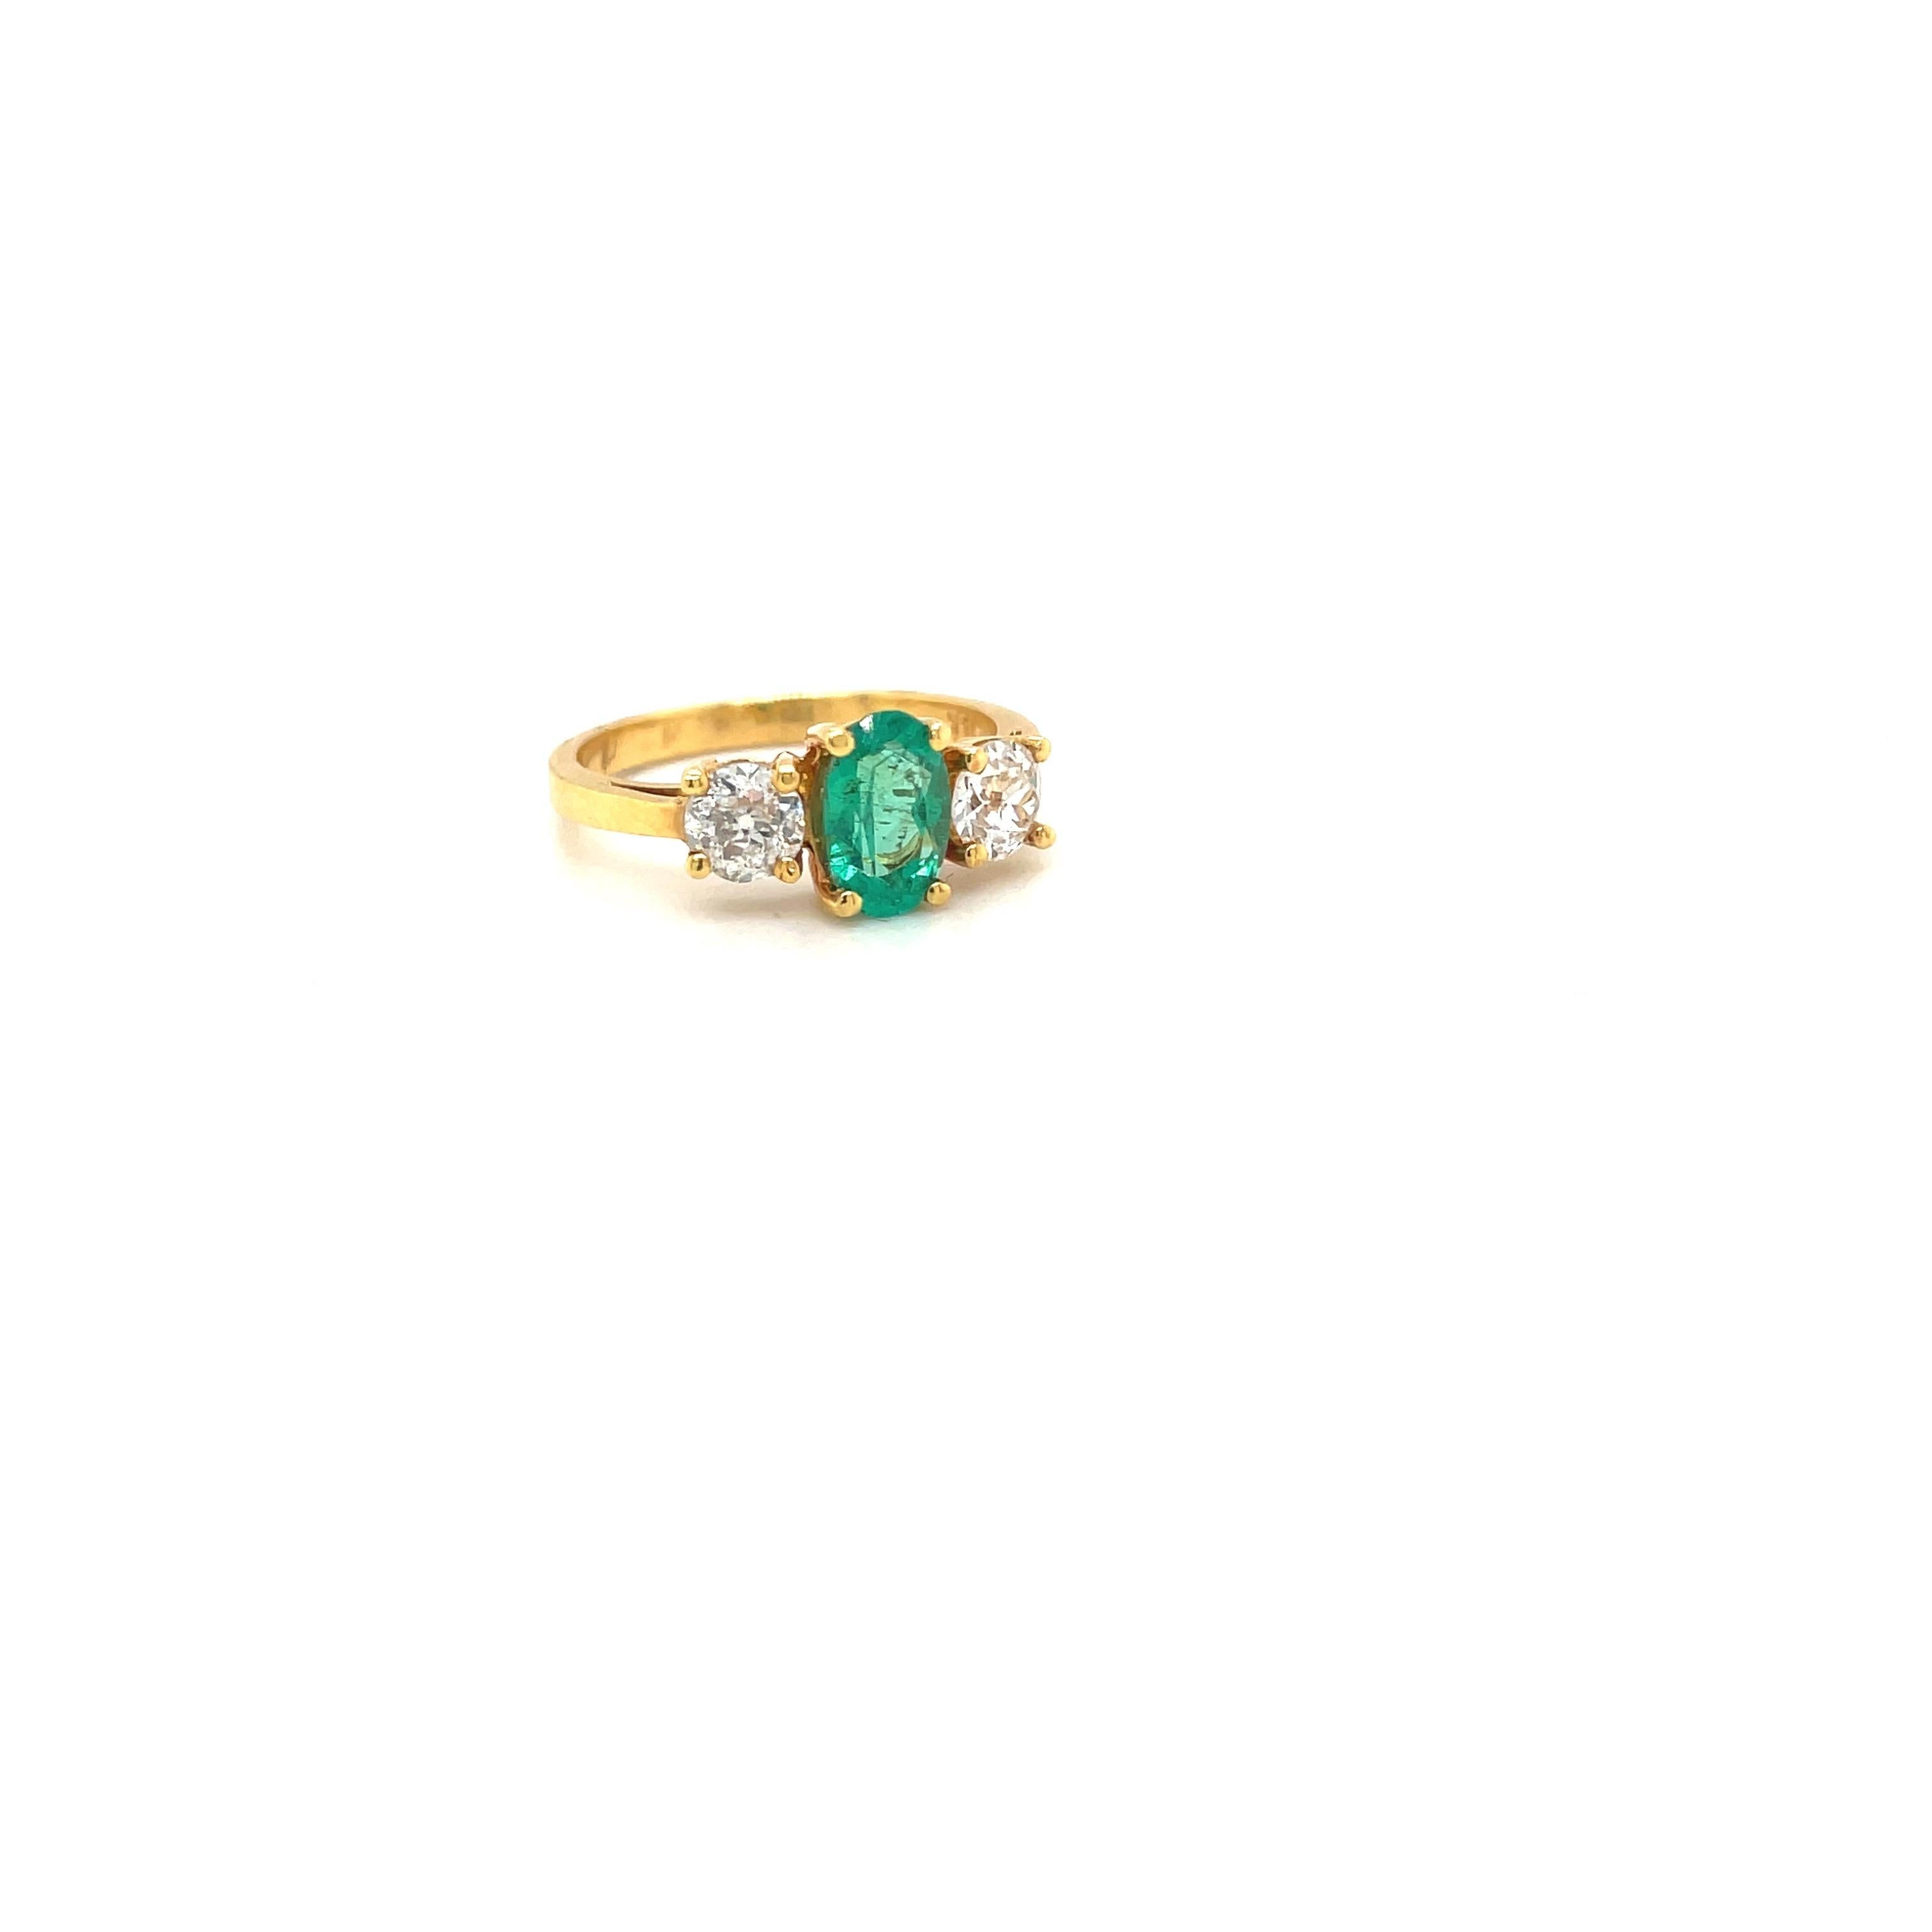 Ein ovaler Smaragd mit einem Gewicht von 0,57 Karat ist in der Mitte dieses Rings aus 18 Karat Gelbgold gefasst. Der Smaragd wird von 2 runden Brillanten flankiert, Gesamtgewicht 0,46 Karat.
Gestempelt 18K 5746
Größe 6.25 kann verfügbar sein
Cellini